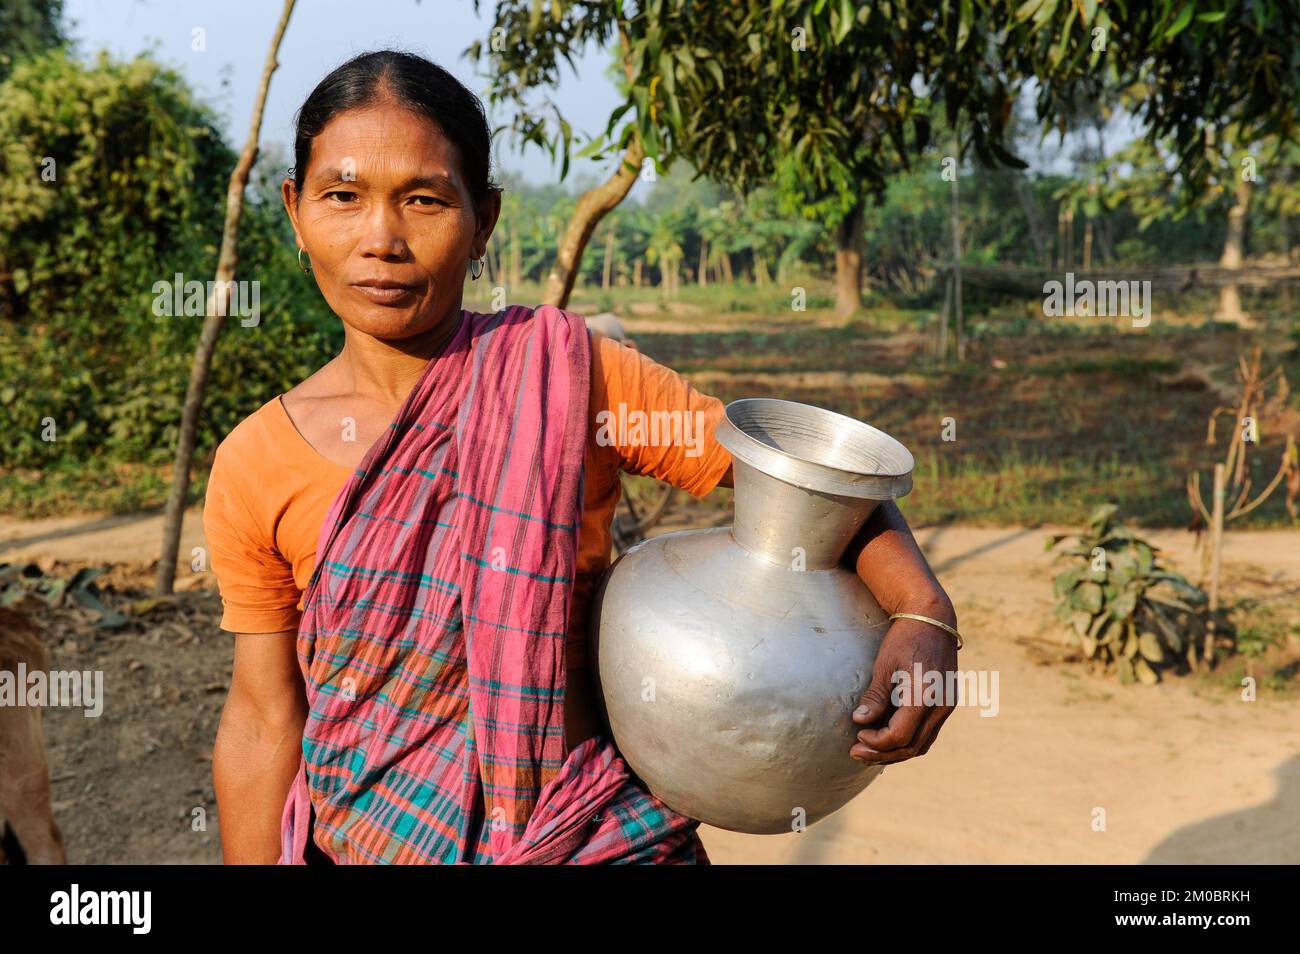 BANGLADESH, Madhupur, Garo people, Garo woman carry water pot / Bangladesch, Region Madhupur, Garo Volksgruppe, Garos sind eine christliche u. ethnische Minderheit , Garo Frau im Dorf Idilpur Stock Photo